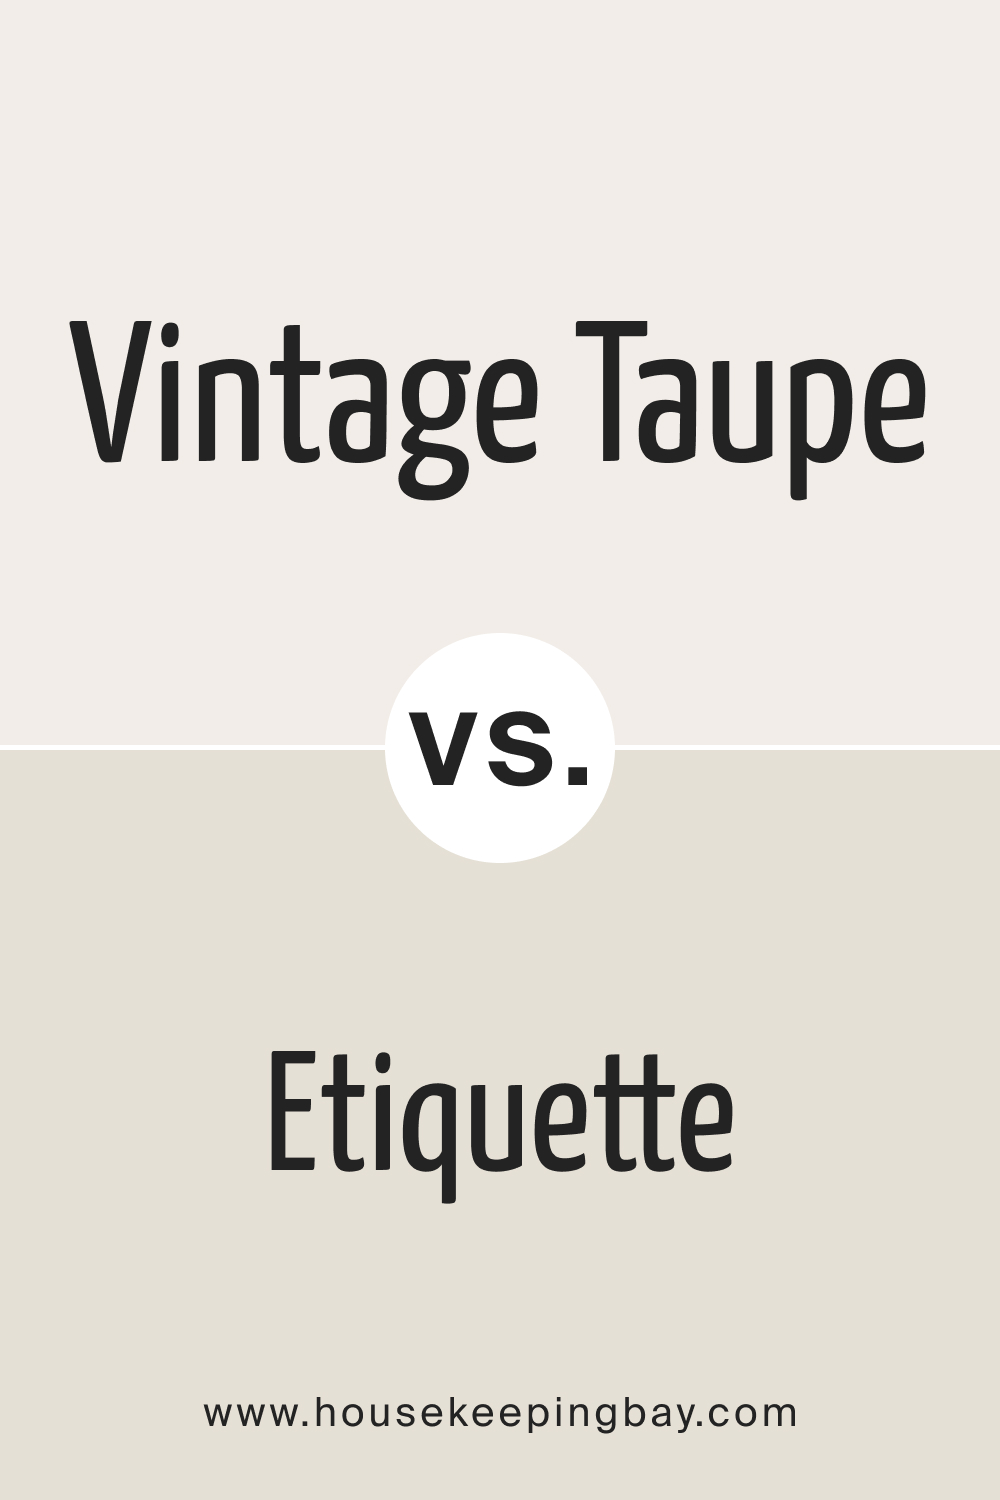 Vintage Taupe 2110 70 vs. AF 50 Etiquette